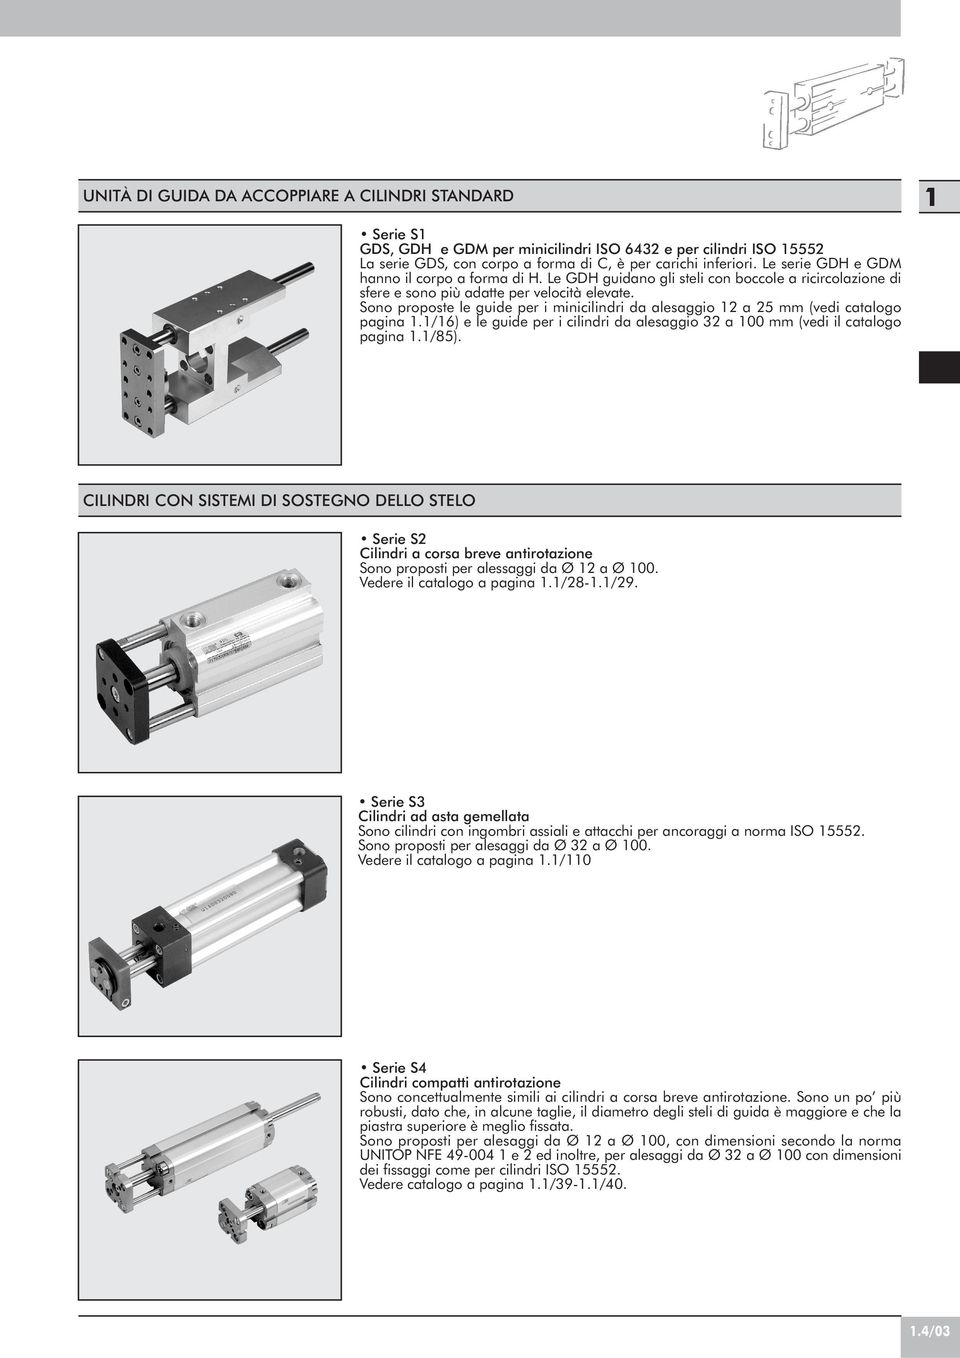 Sono proposte le guide per i minicilindri d lesggio 12 25 mm (vedi ctlogo pgin 1.1/16) e le guide per i cilindri d lesggio 32 100 mm (vedi il ctlogo pgin 1.1/85).